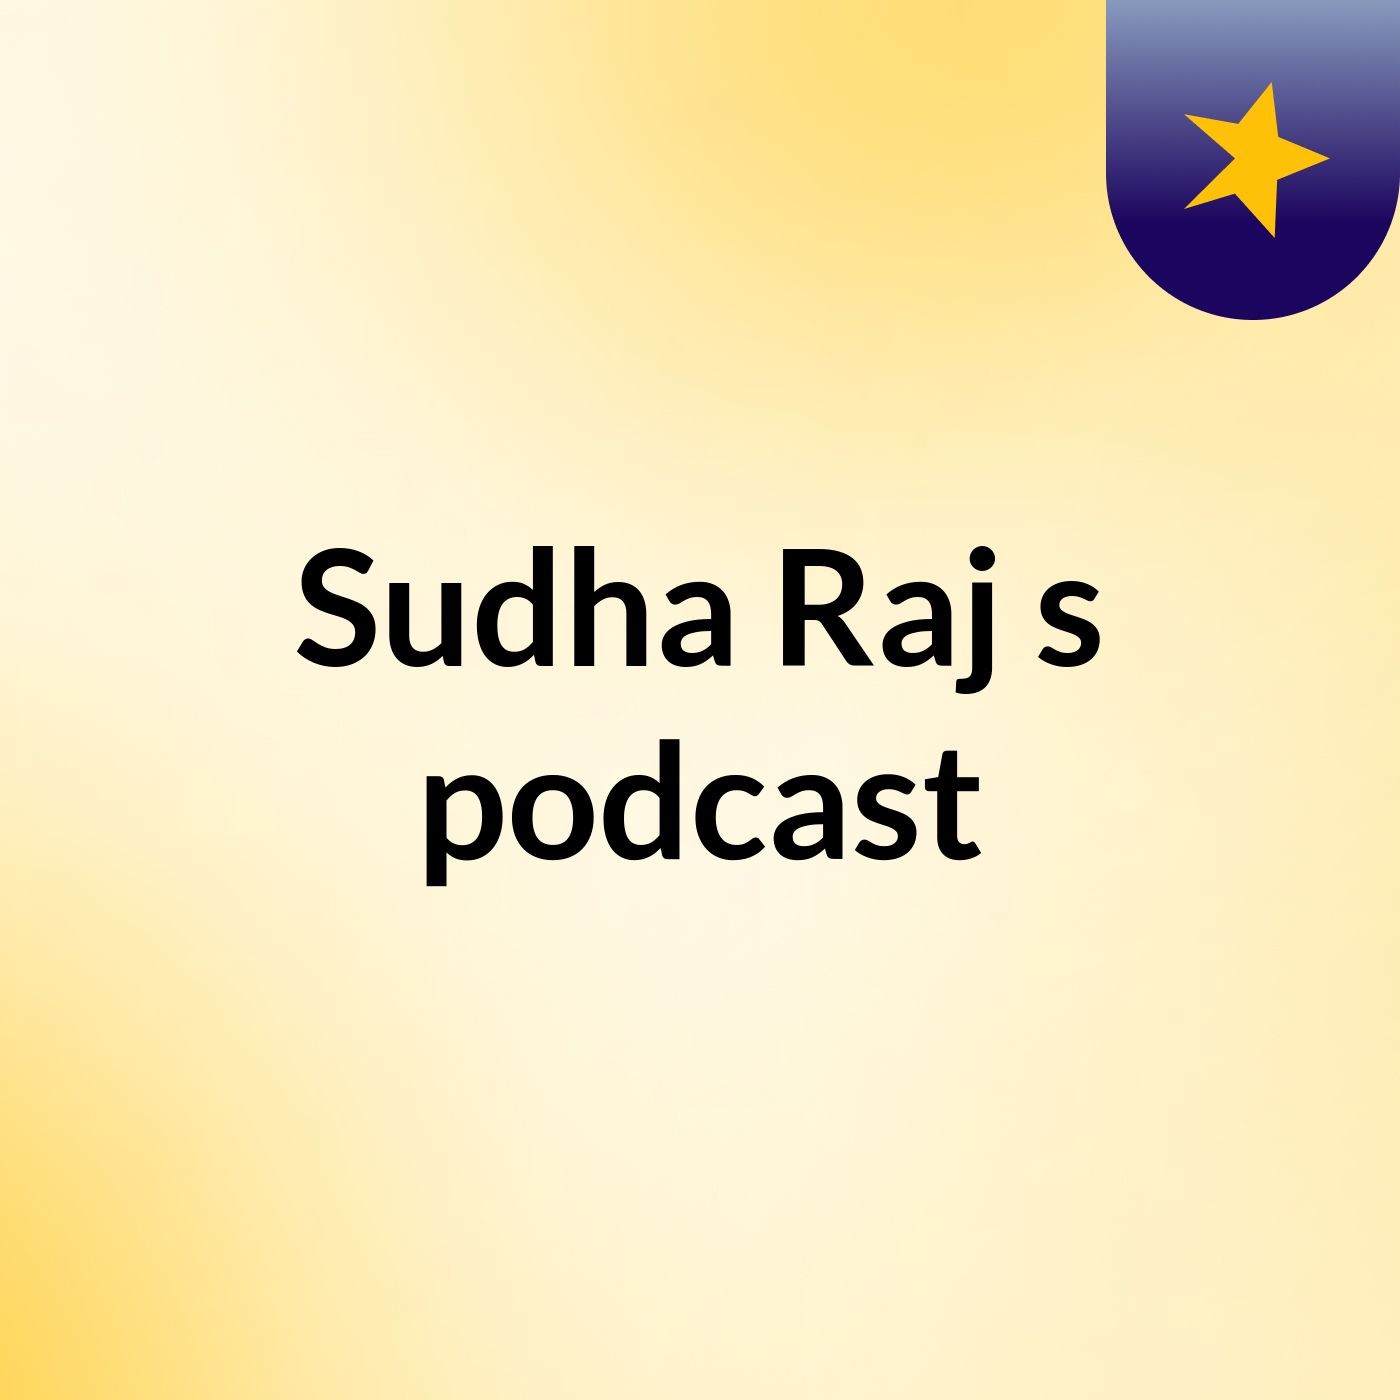 Sudha Raj's podcast